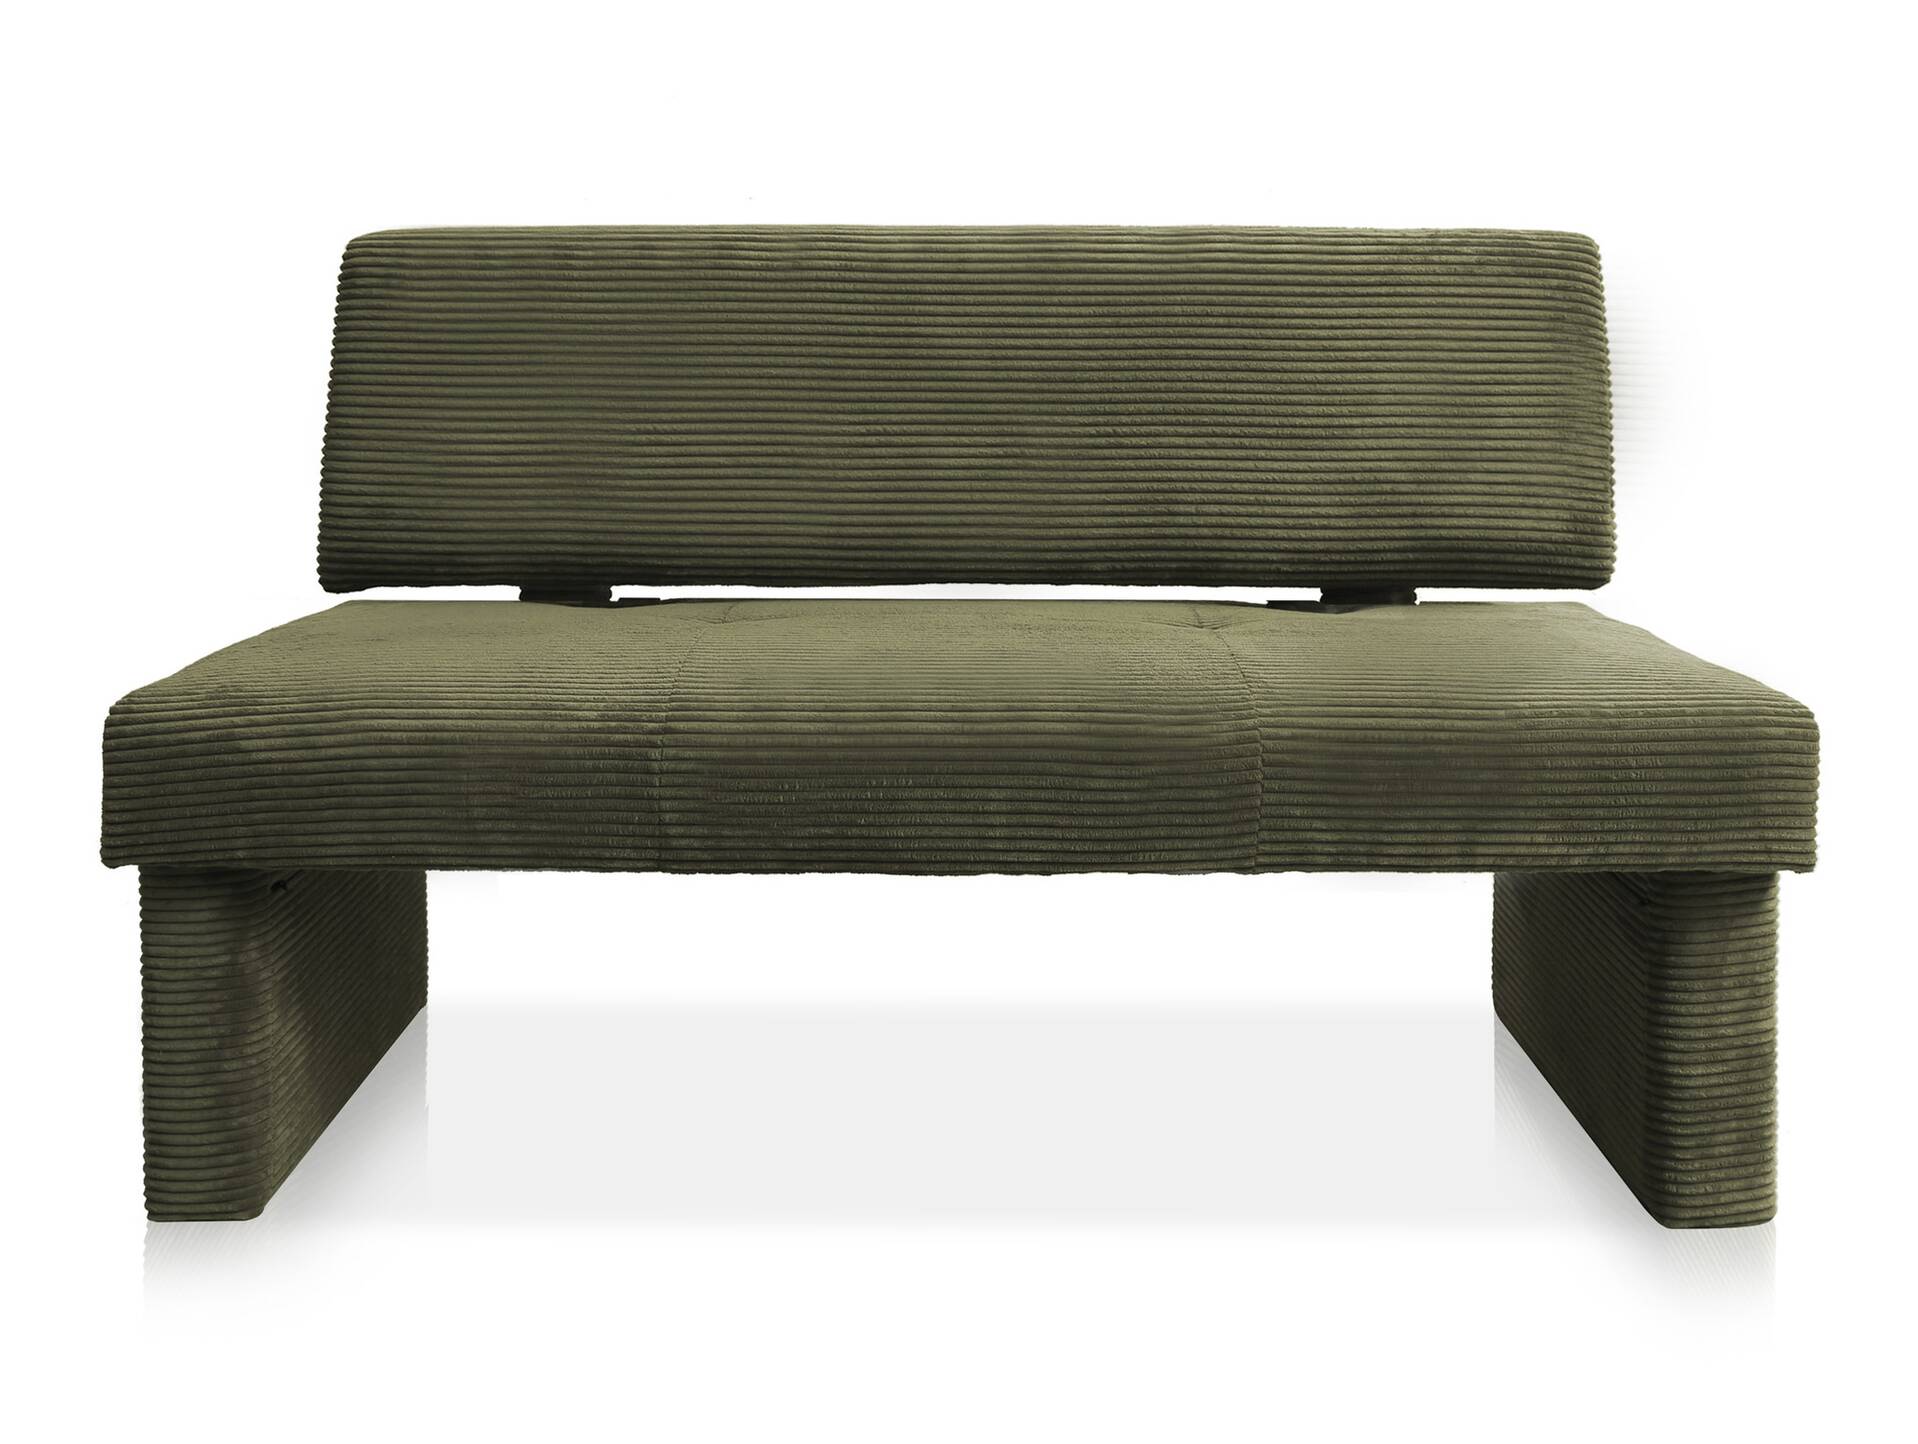 DUCADO Sitzbank mit Gestellrahmen aus Massivholz/Cordbezug 130 cm | mit Rückenlehne | olive